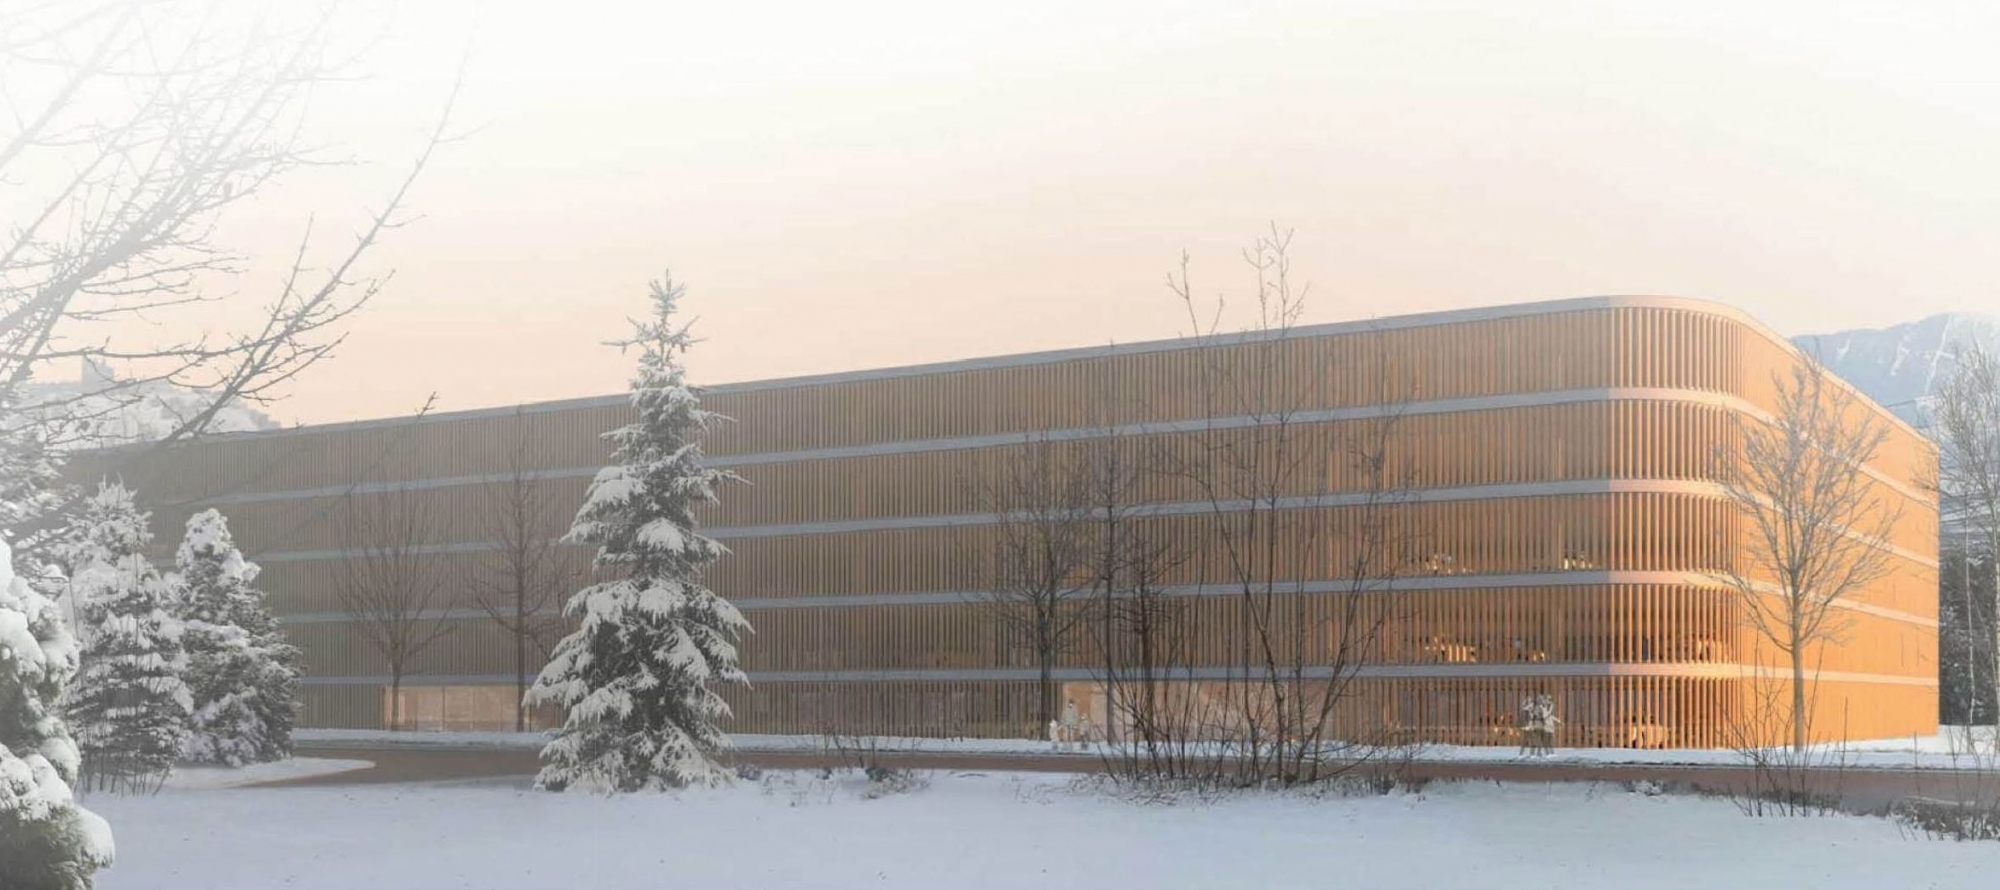 Voilà à quoi ressemblera le futur parking couvert "silo" de l'hôpital de Sion si le parlement valaisan dit oui la semaine prochaine à un cautionnement de 27 millions de francs.